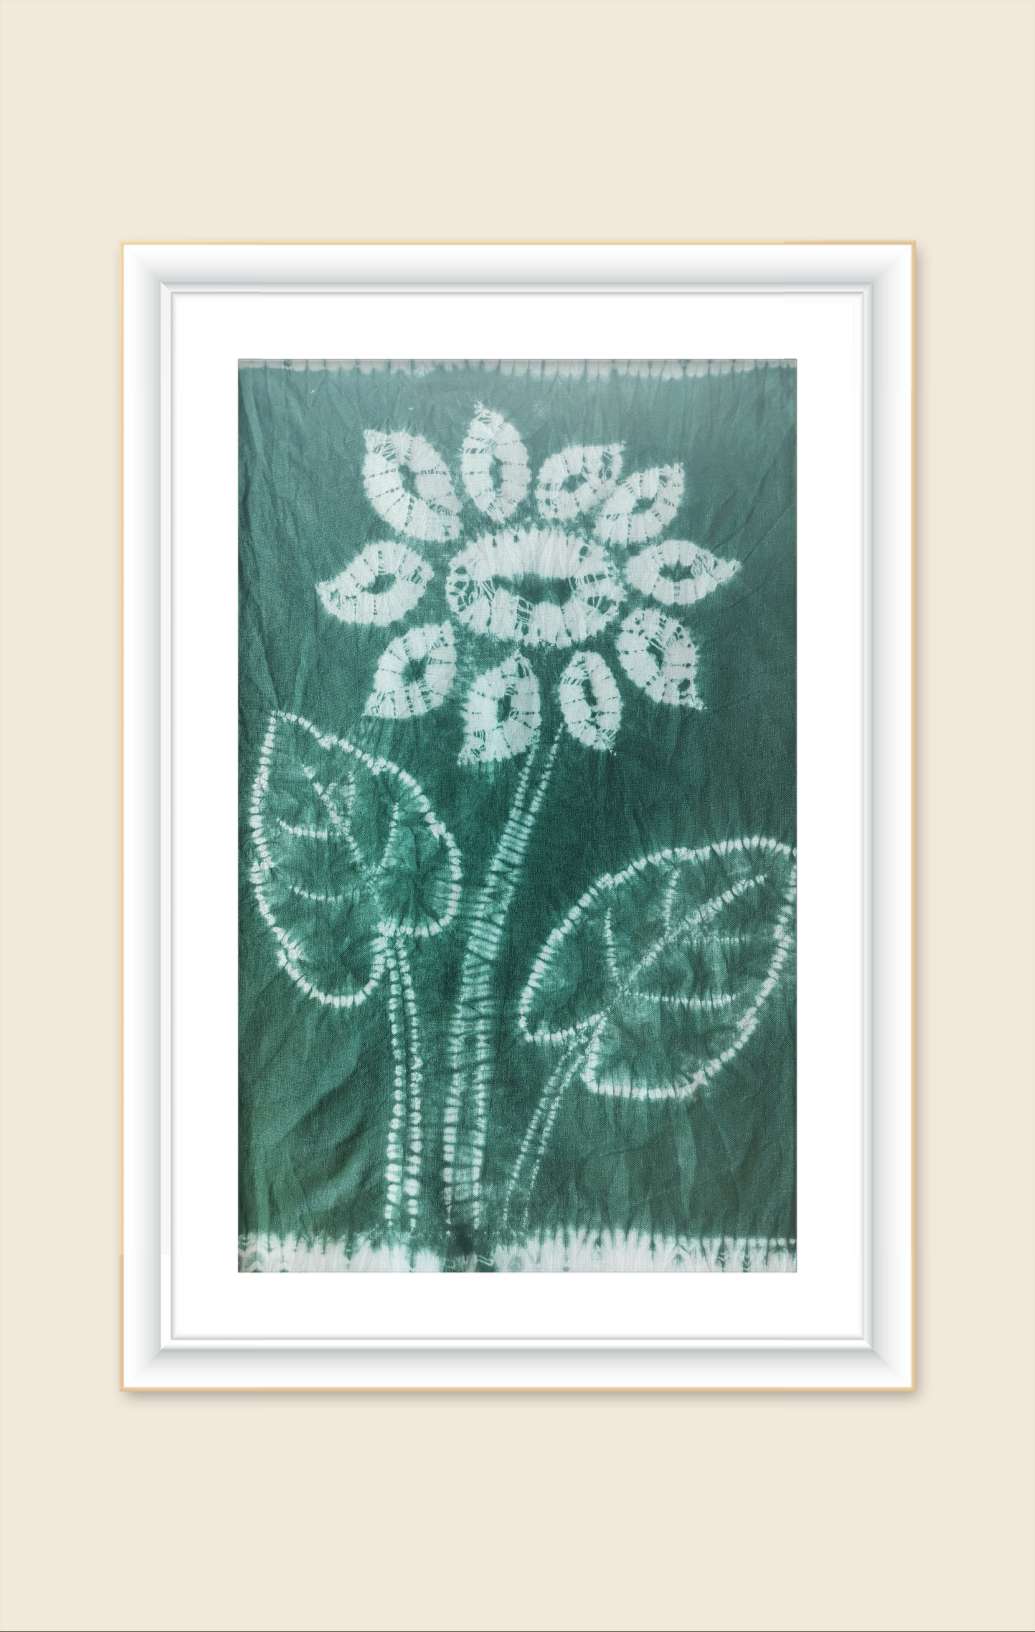 用自贡扎染的手法来给大家扎染一幅装饰画《向上的花》，是由一朵向日葵和两片叶子构成，比较简单，大家可以动手试试哦。